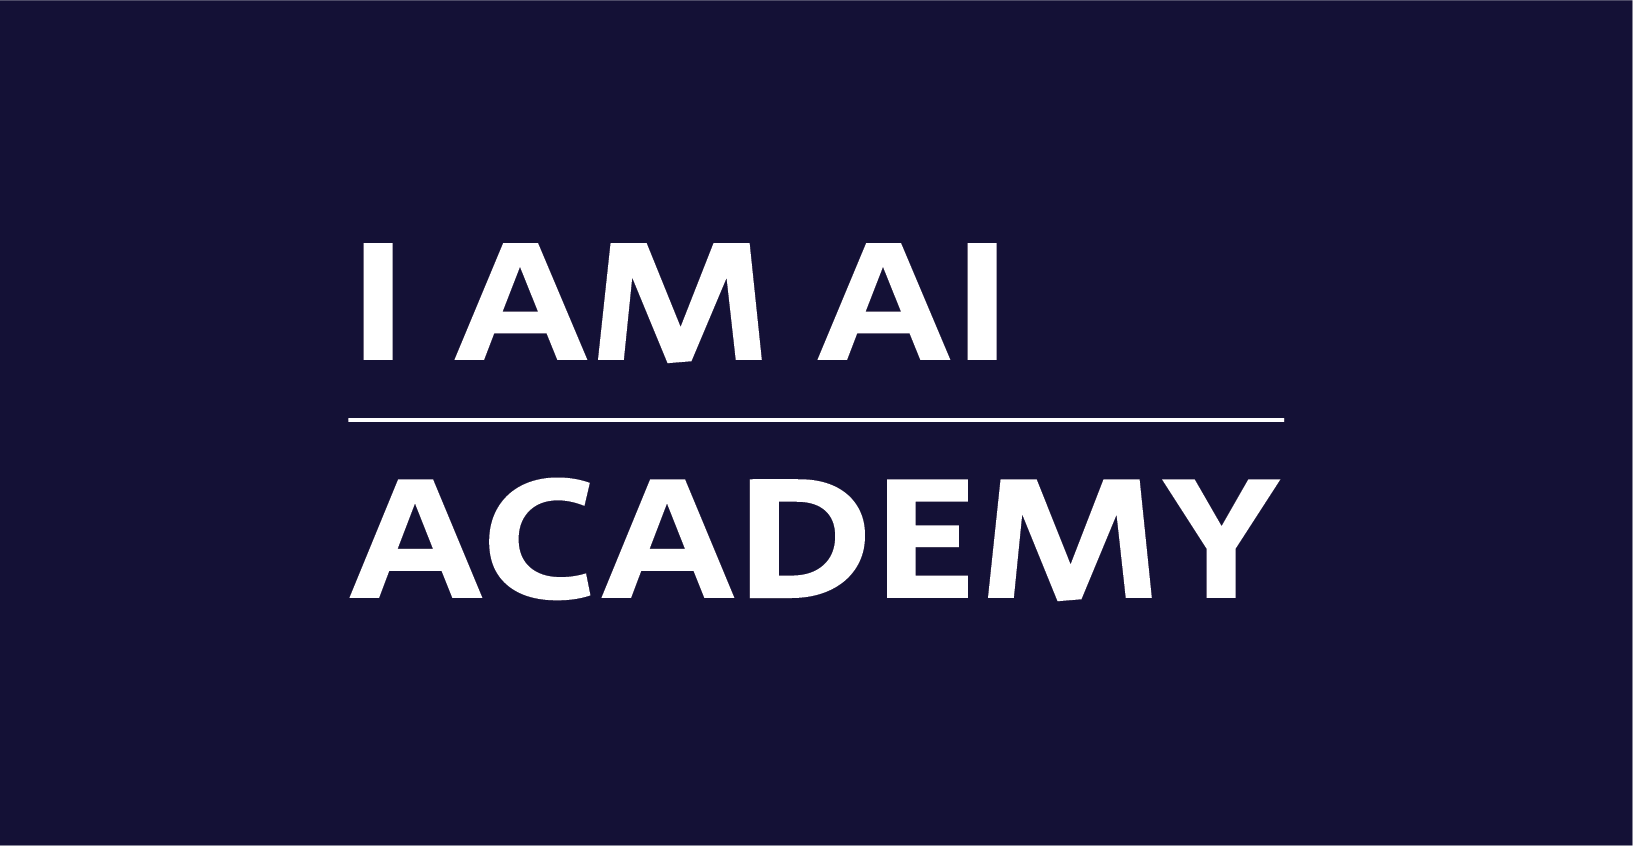 I AM AI academy